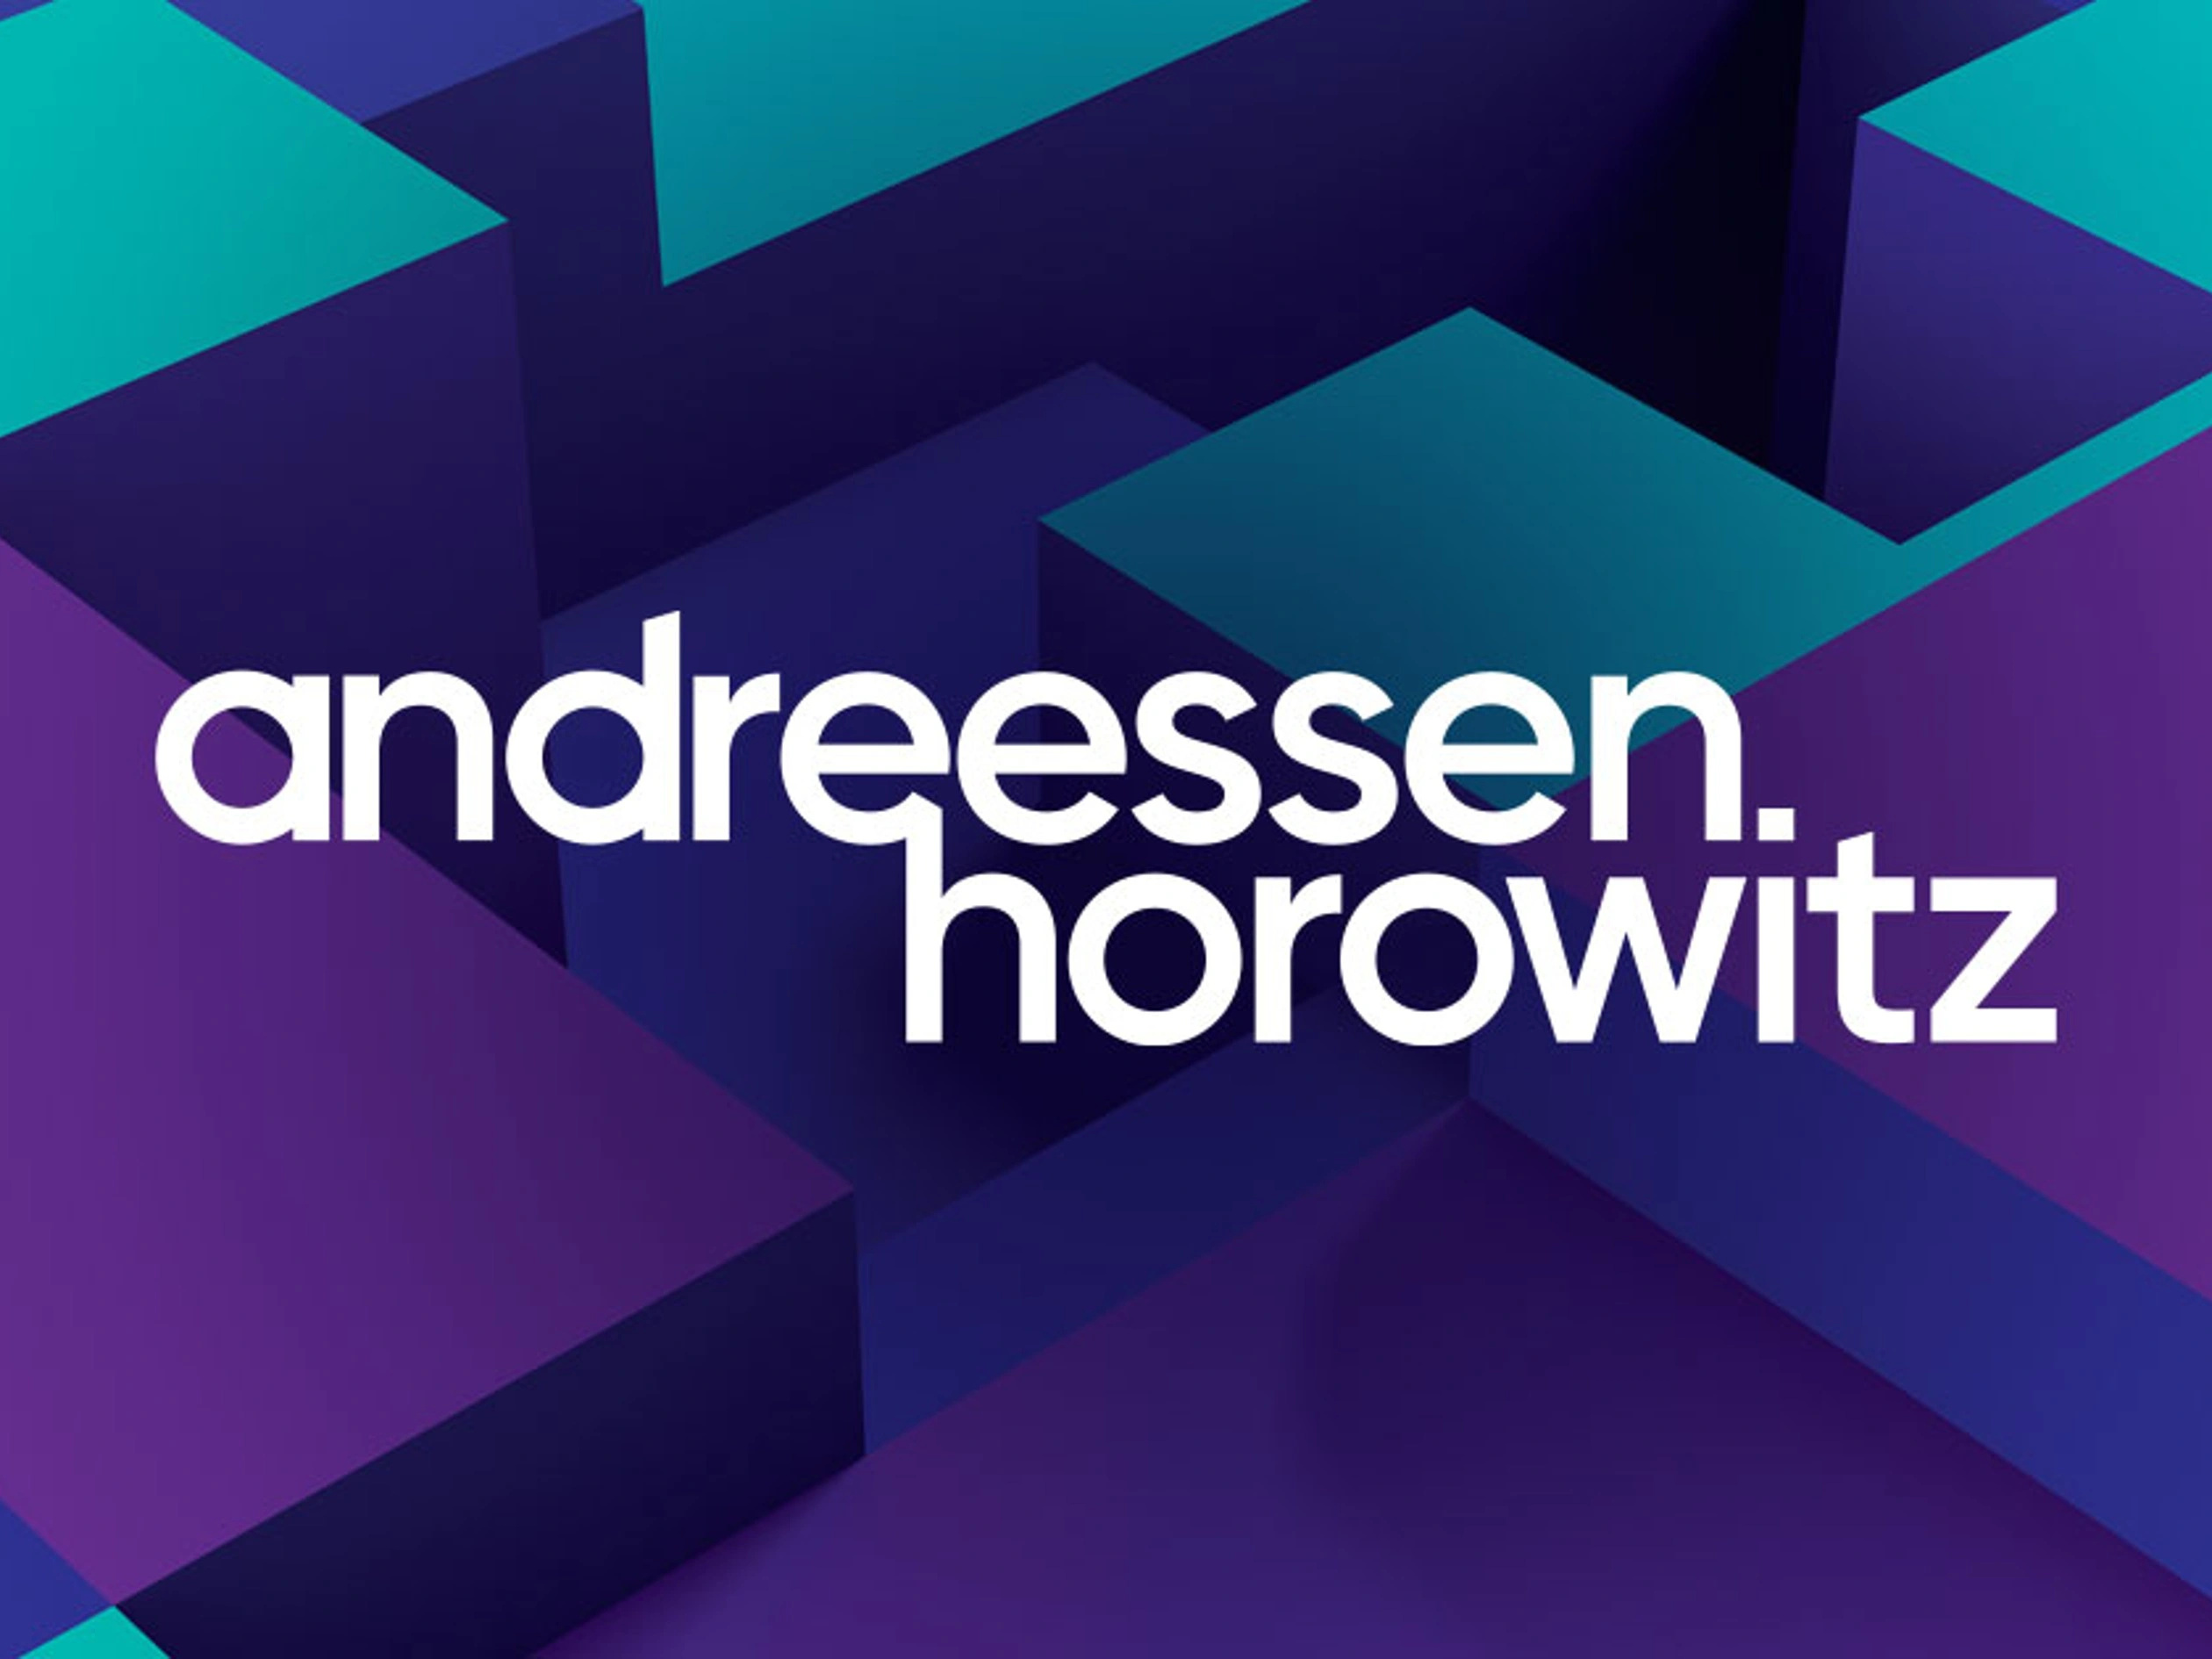 Andreessen Horowitz (a16z)